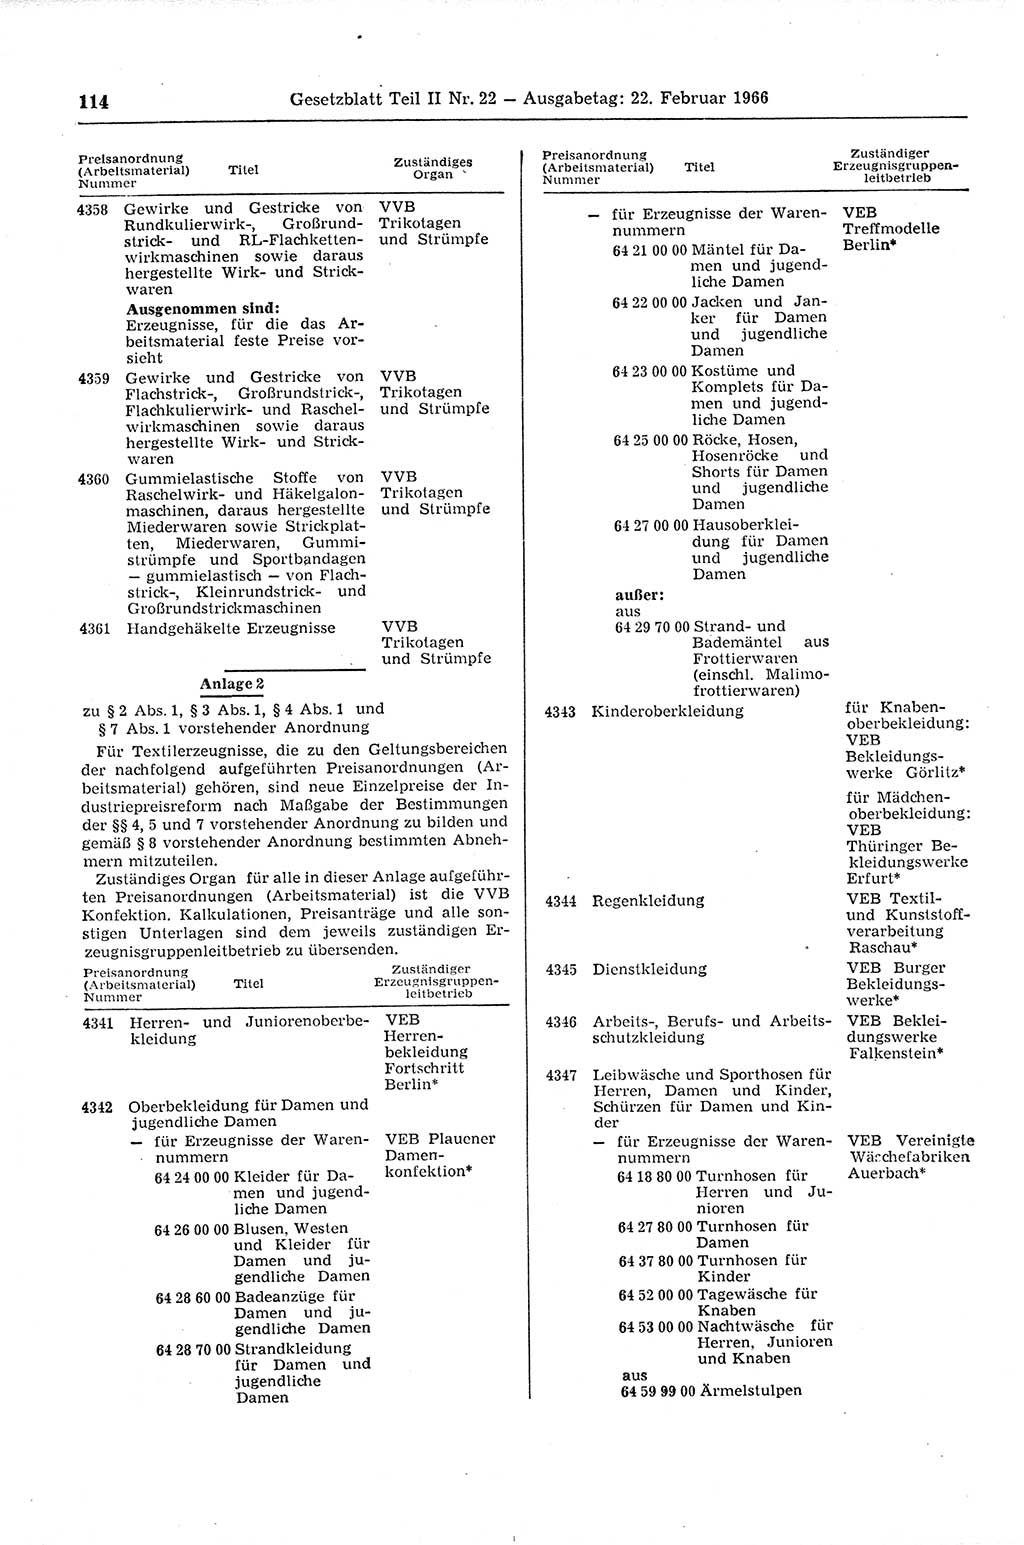 Gesetzblatt (GBl.) der Deutschen Demokratischen Republik (DDR) Teil ⅠⅠ 1966, Seite 114 (GBl. DDR ⅠⅠ 1966, S. 114)